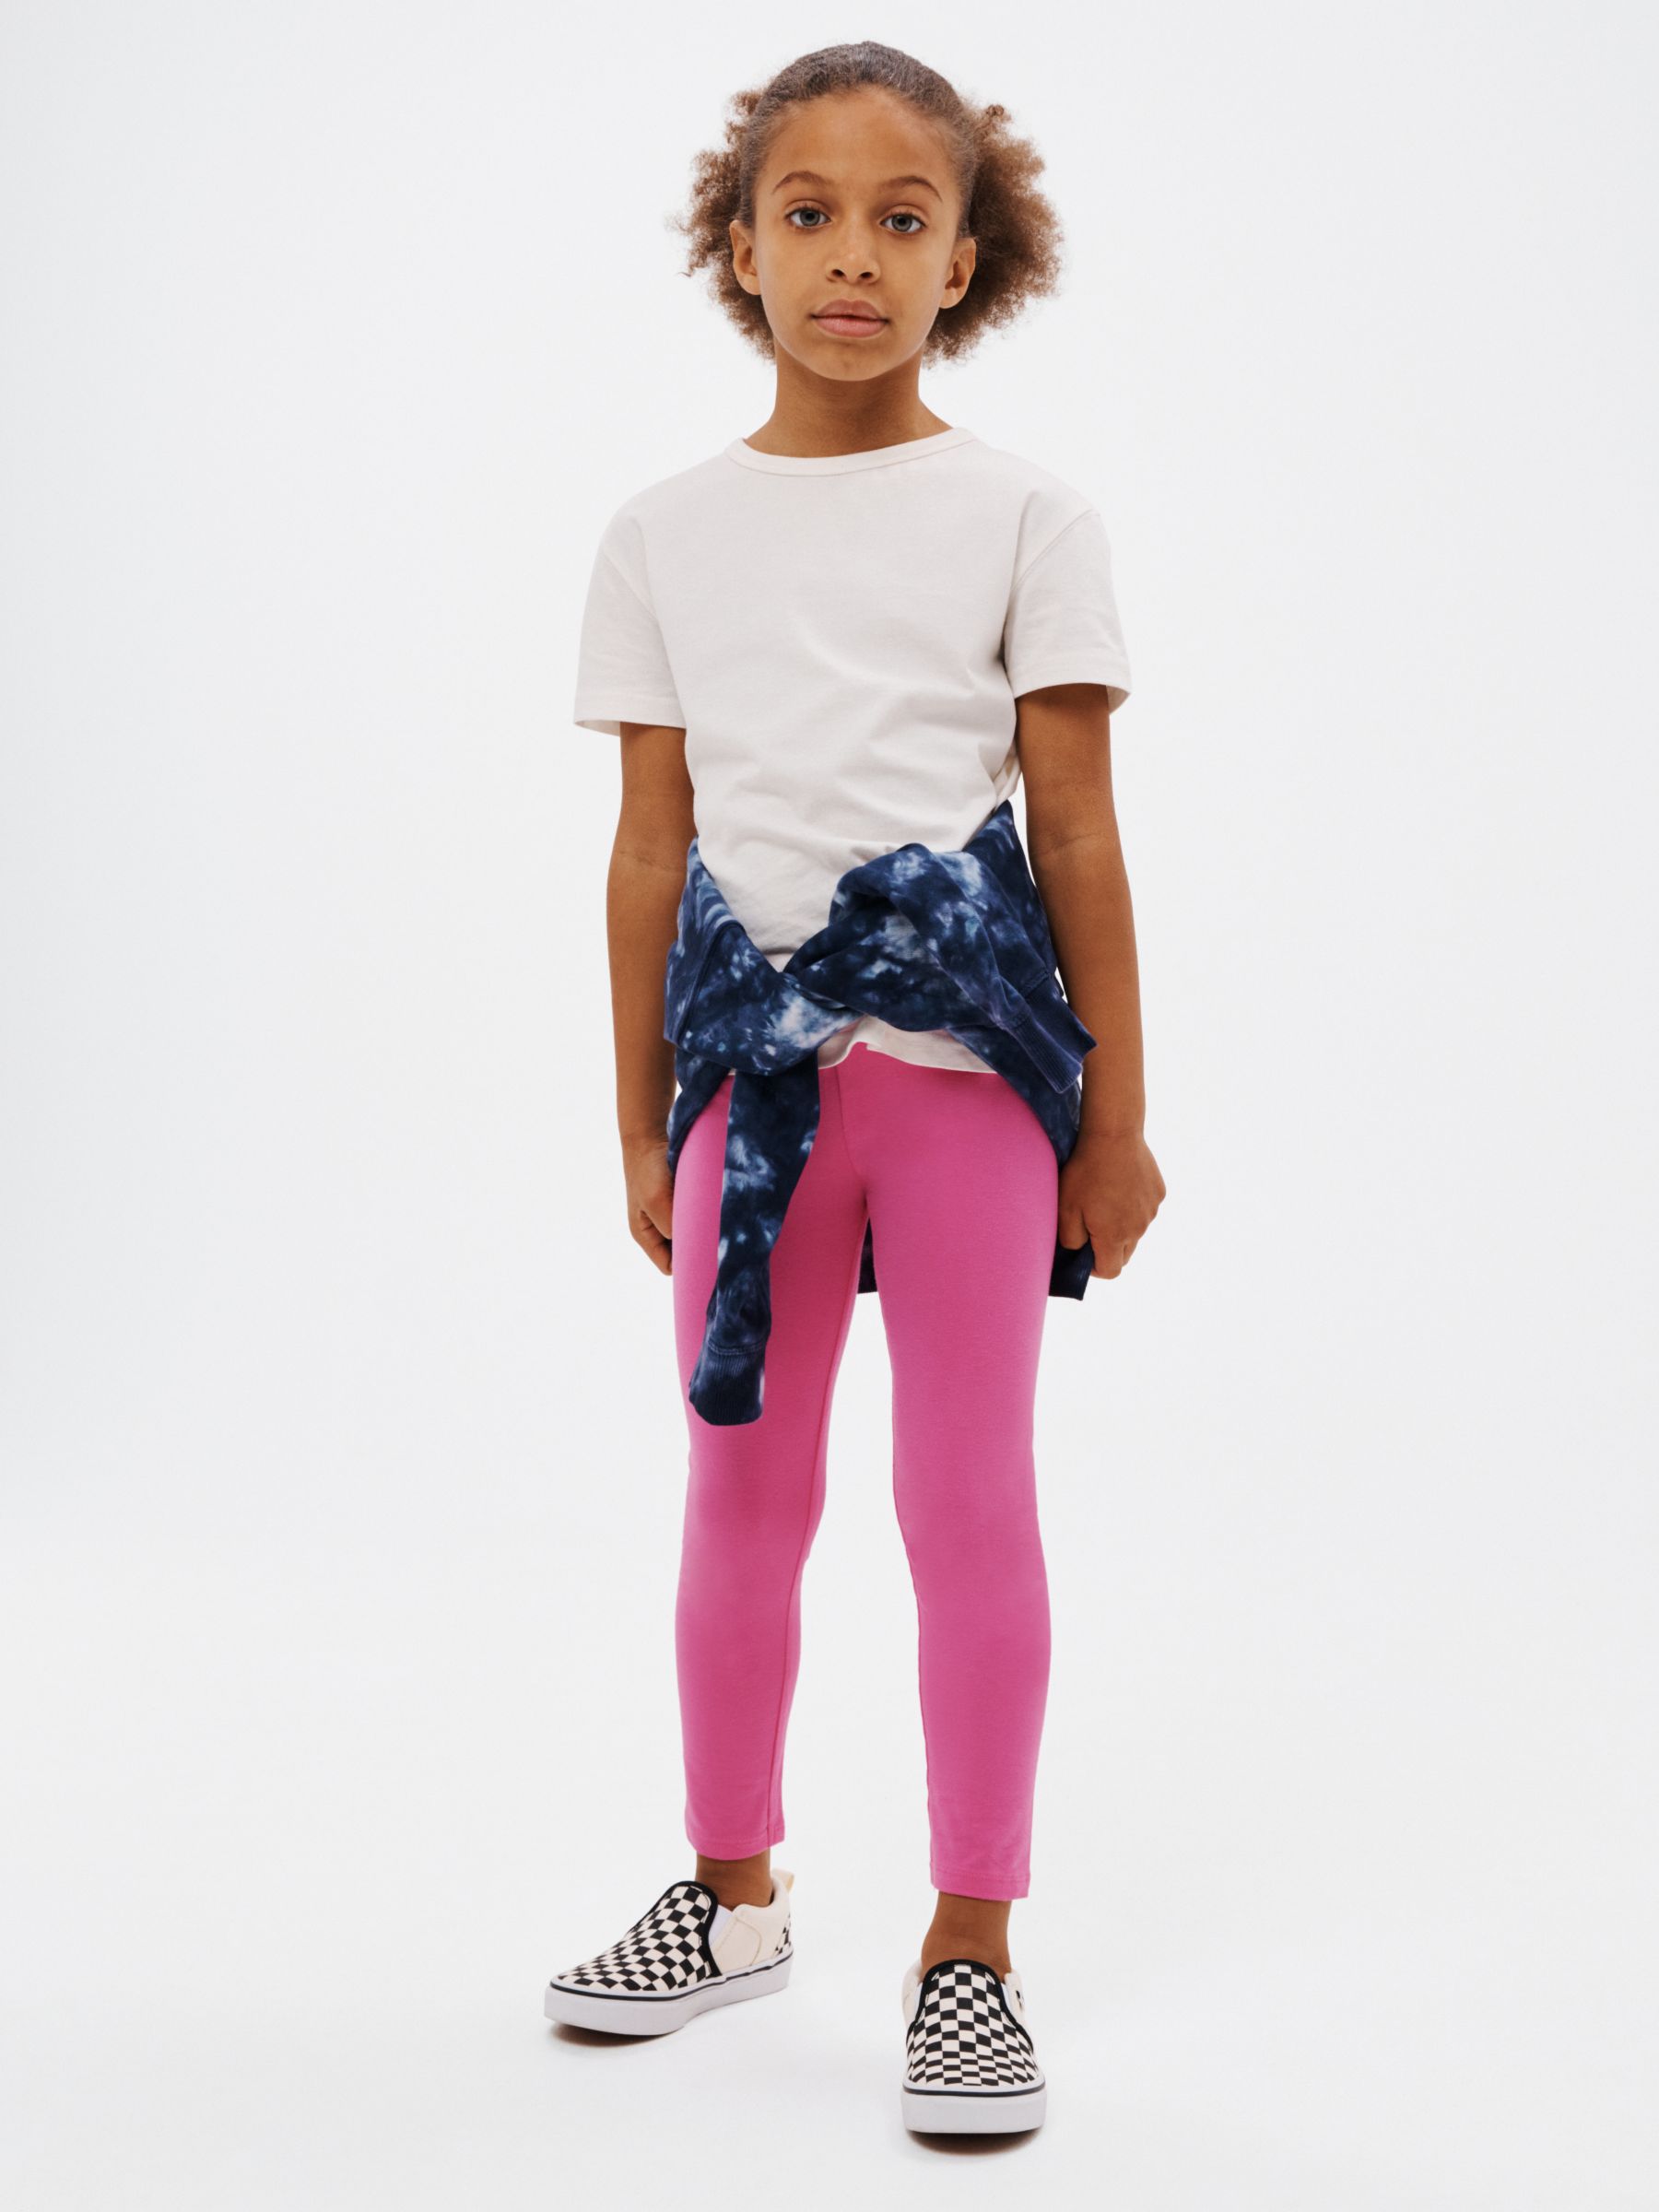 John Lewis Kids' Basic Leggings, Pink at John Lewis & Partners